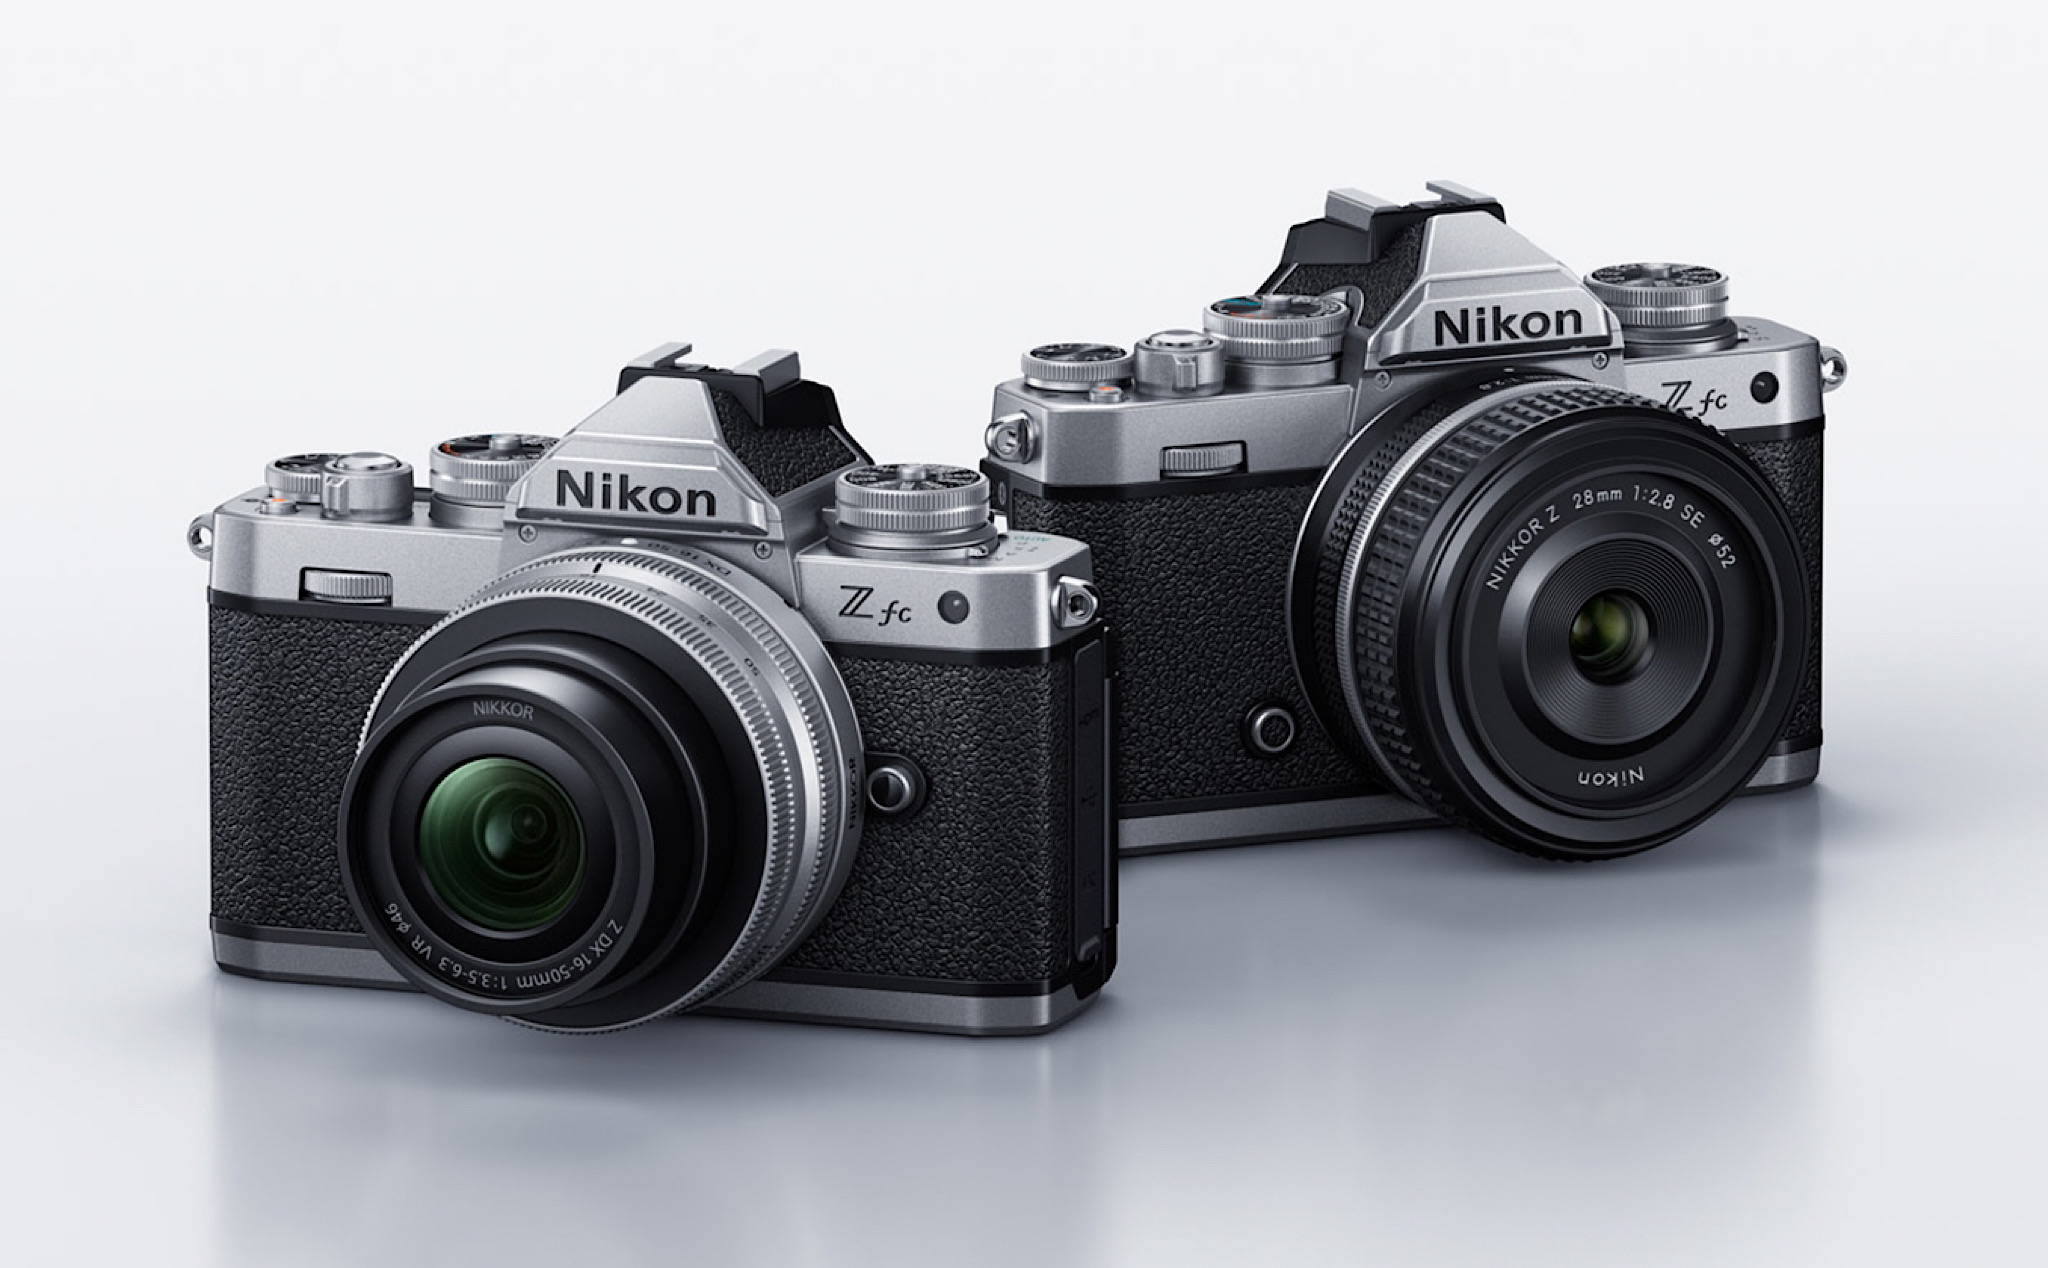 Nikon ra mắt máy ảnh Nikon Z fc: kiểu dáng retro rất đẹp, 20.9MP, cảm biến crop